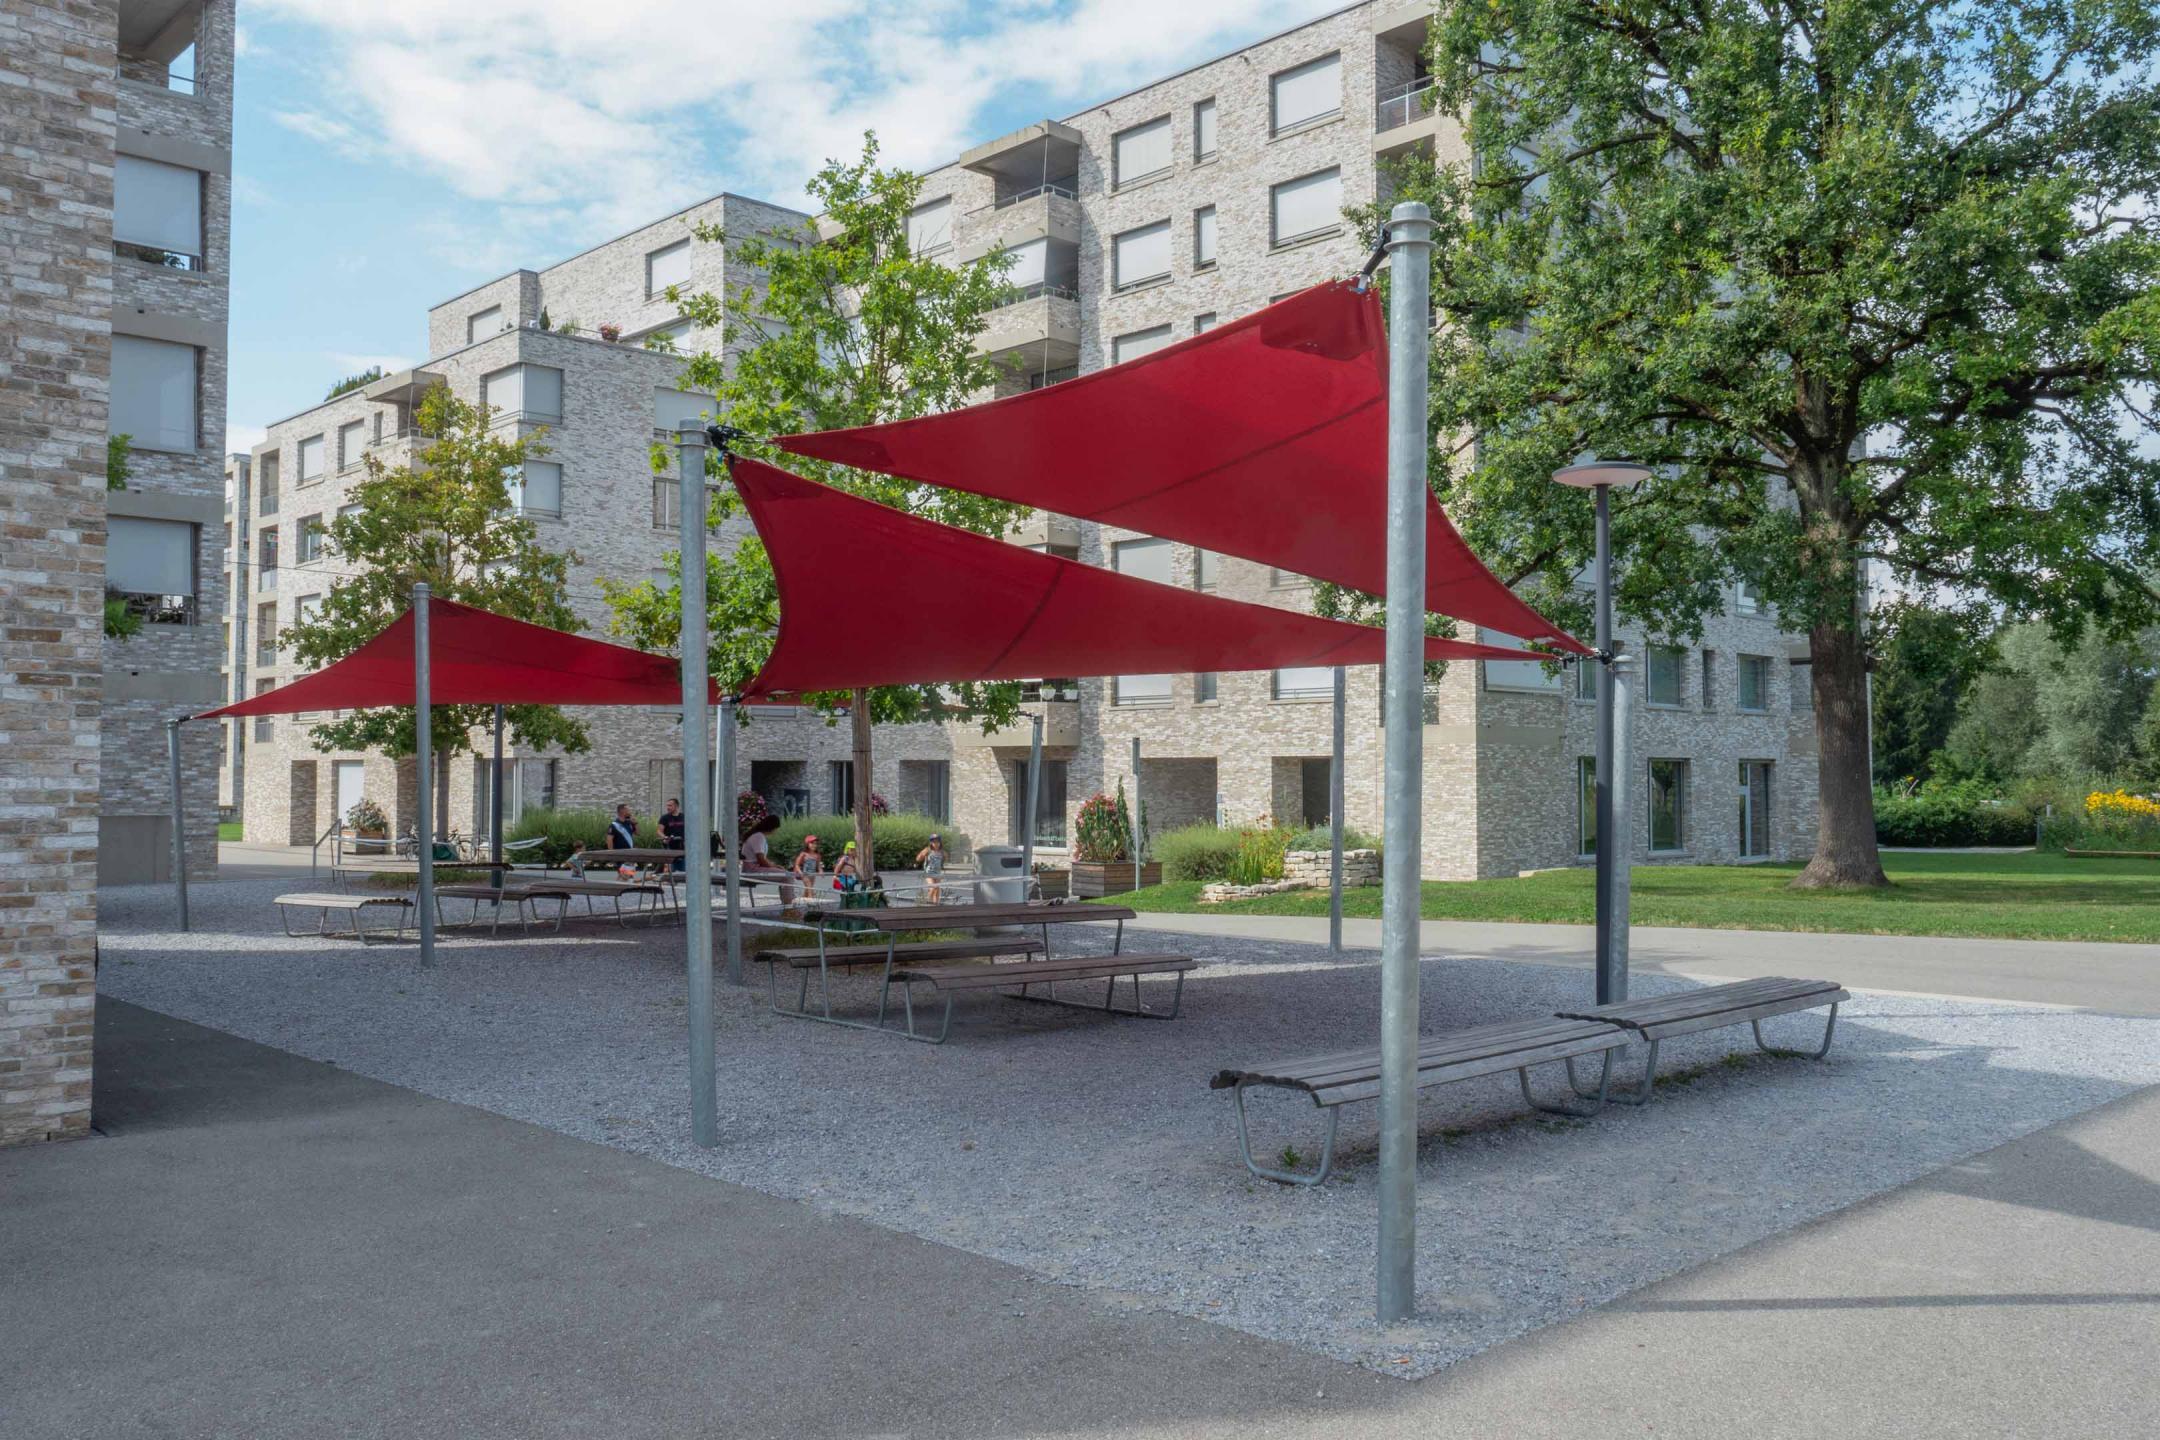 Zürich, Mattenhof: Sonnensegel beschatten einen Picknickplatz.